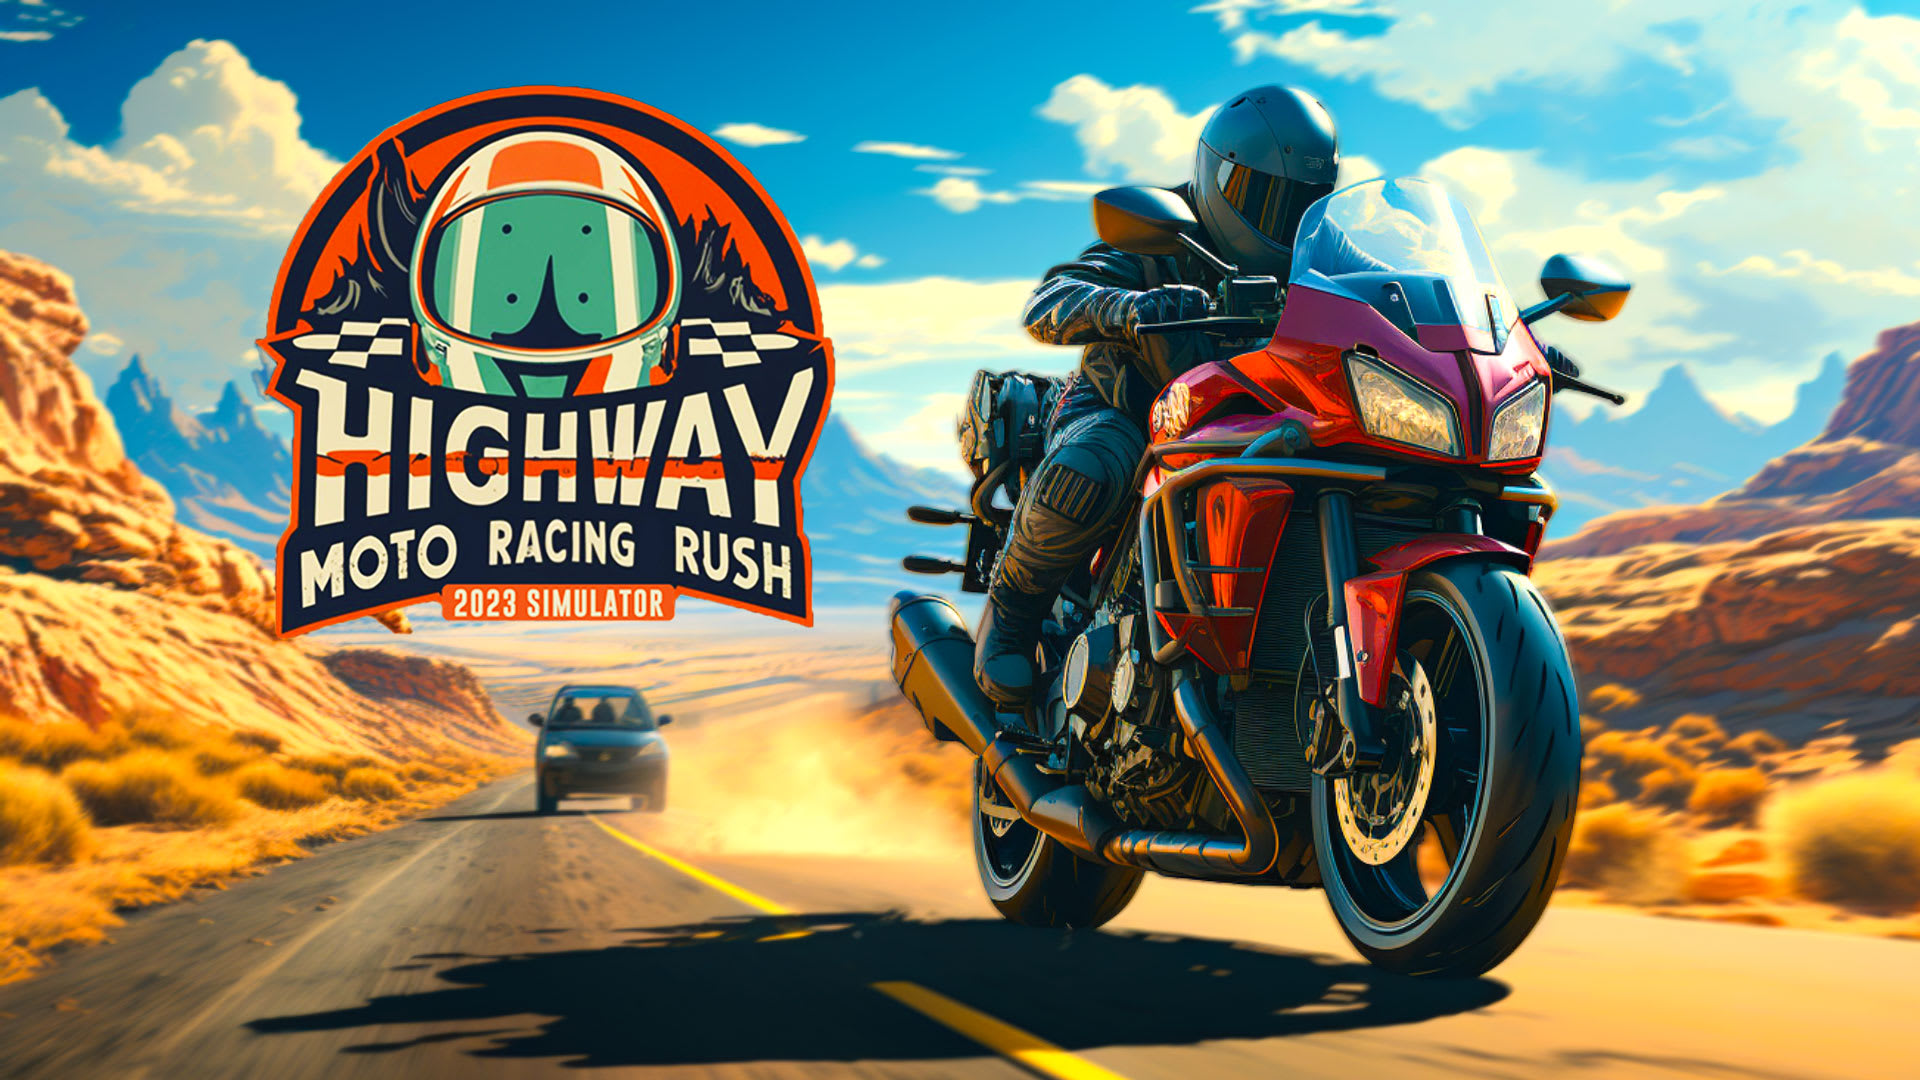 Highway Moto Racing Rush 2023 Simulator 1